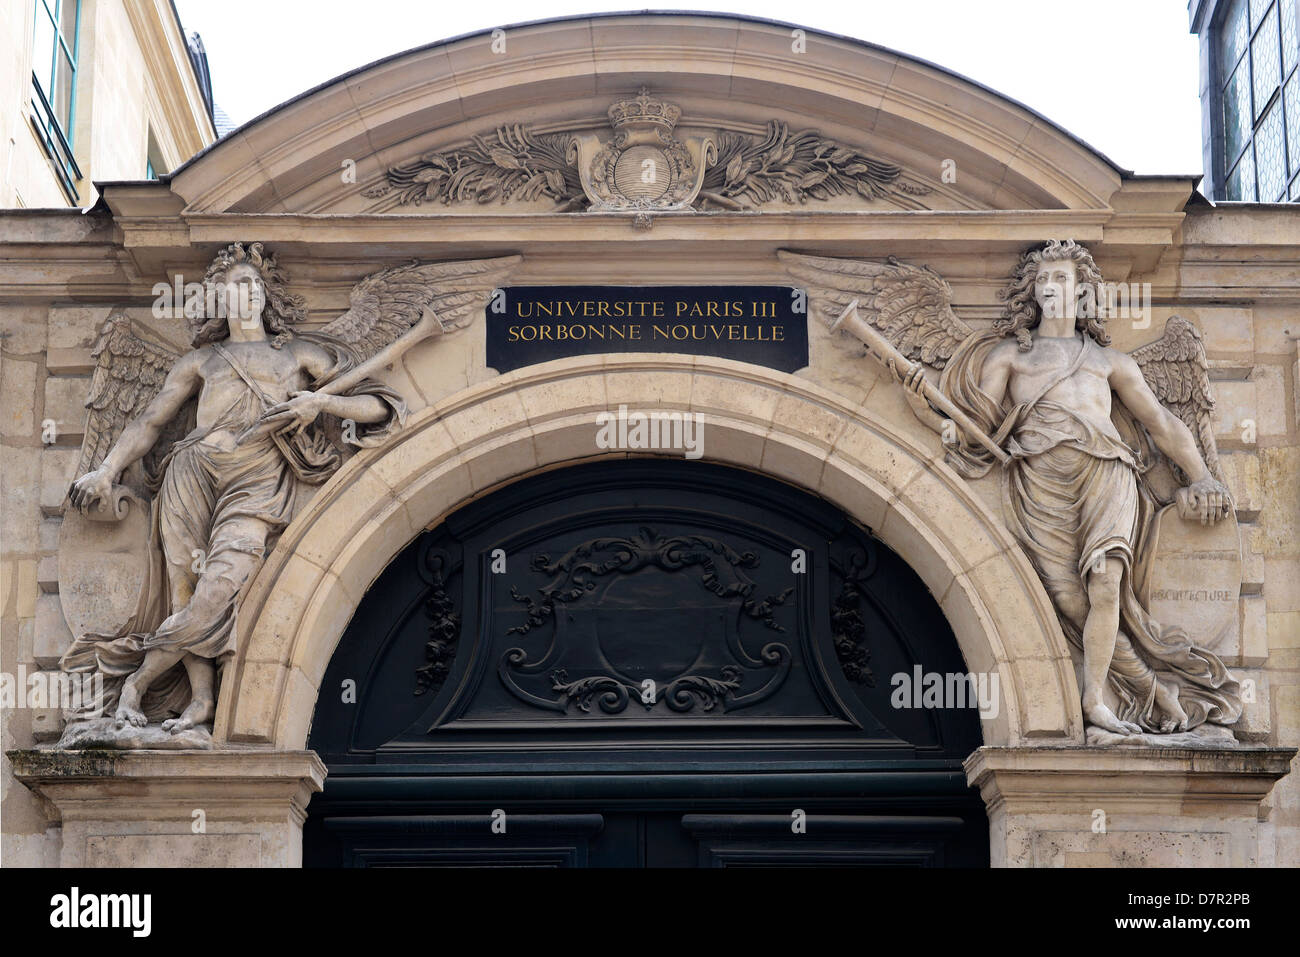 Die Universität Sorbonne im Quartier Latin, Paris - Frankreich Stockfoto